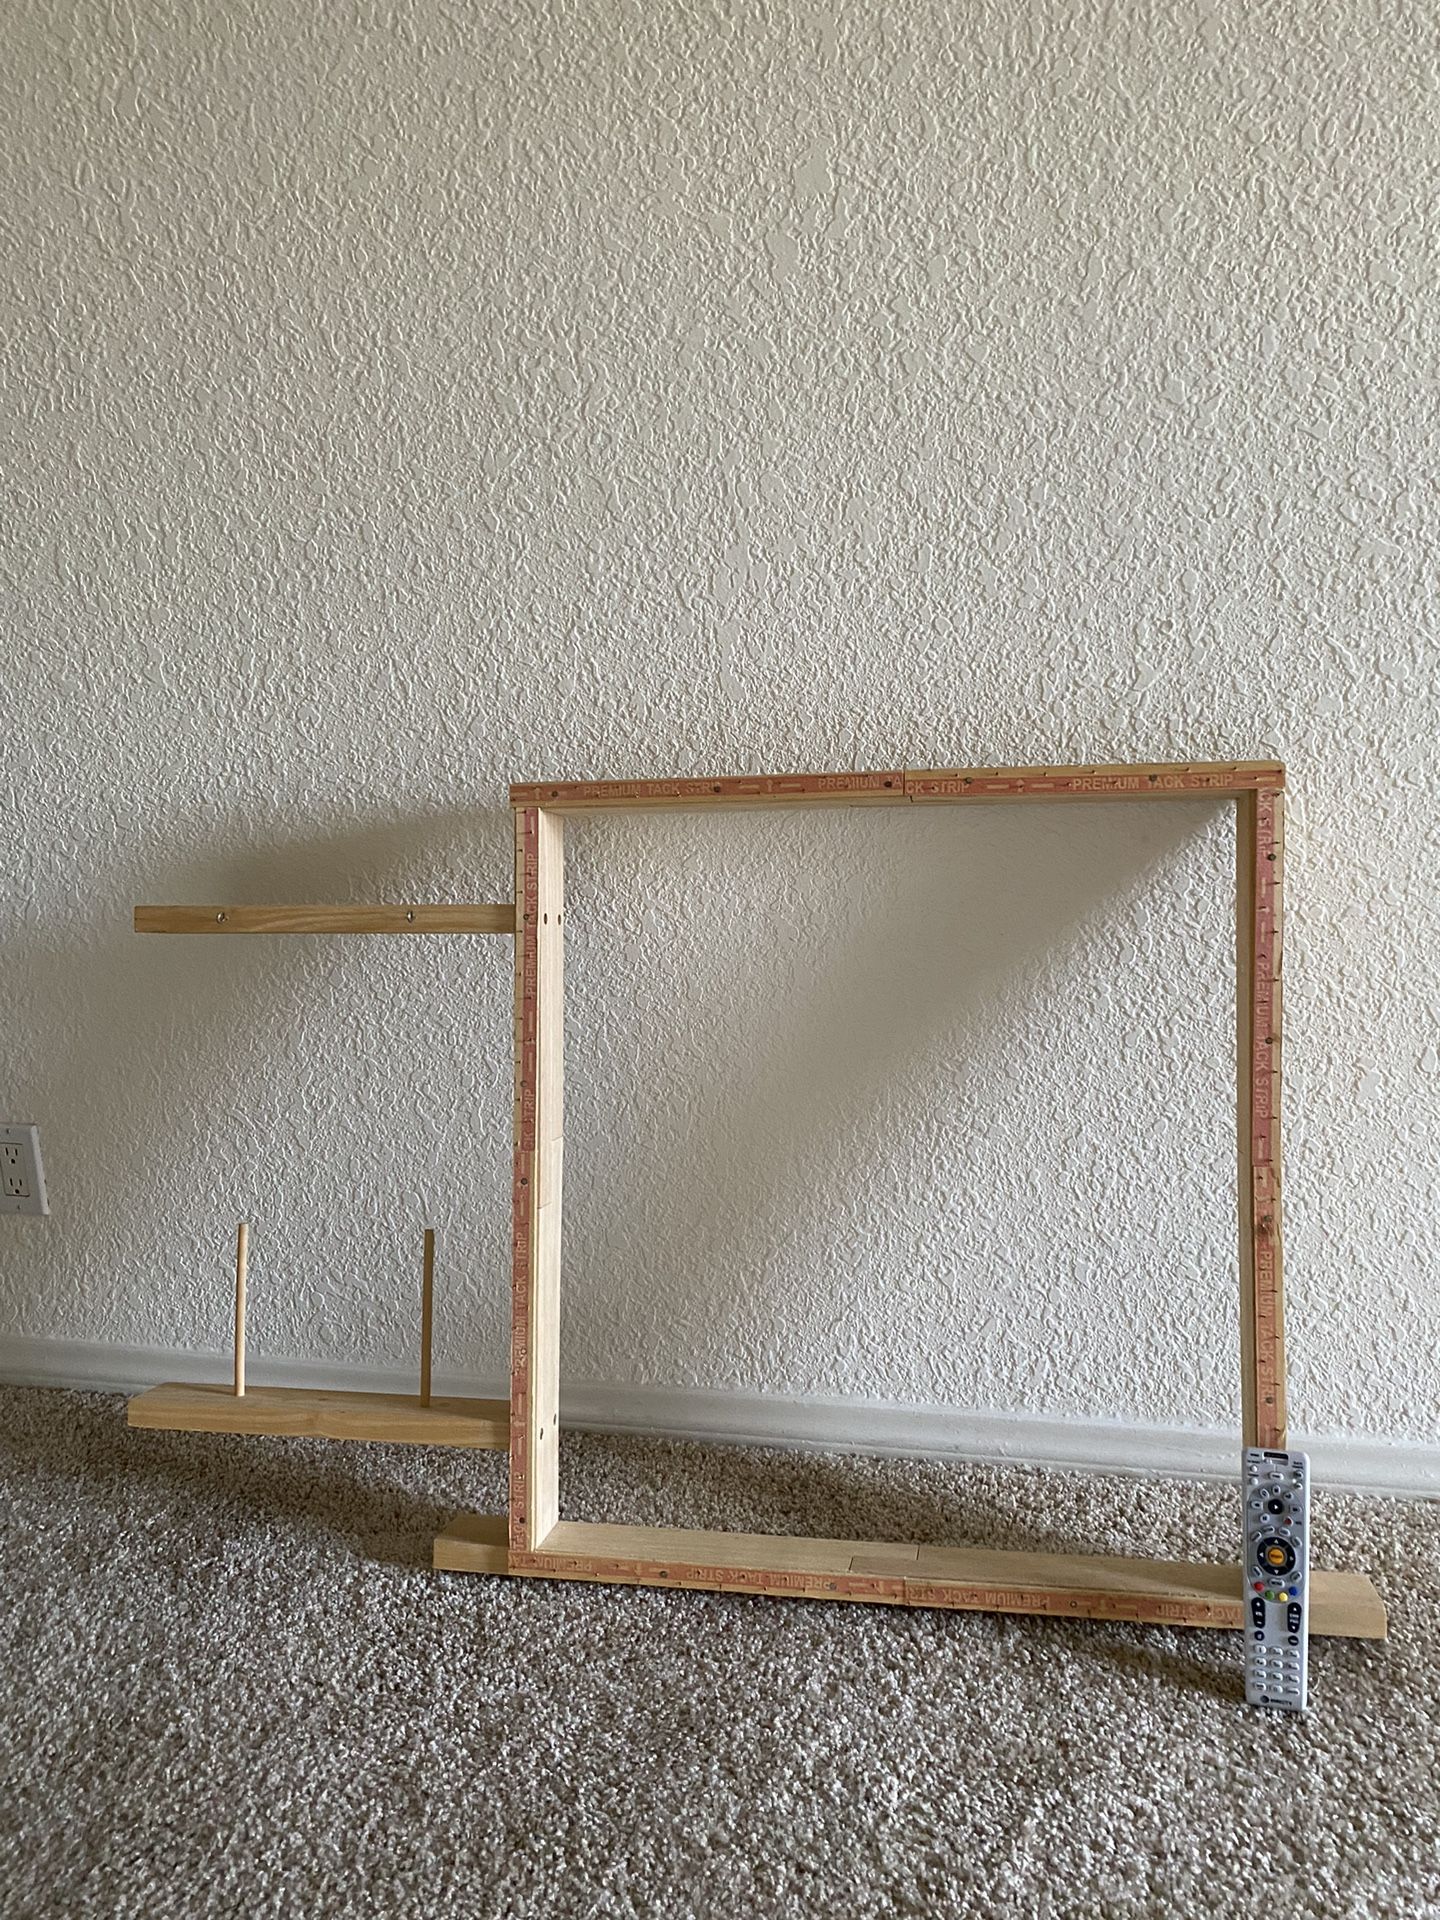 Tufting Frame - Wooden Frame